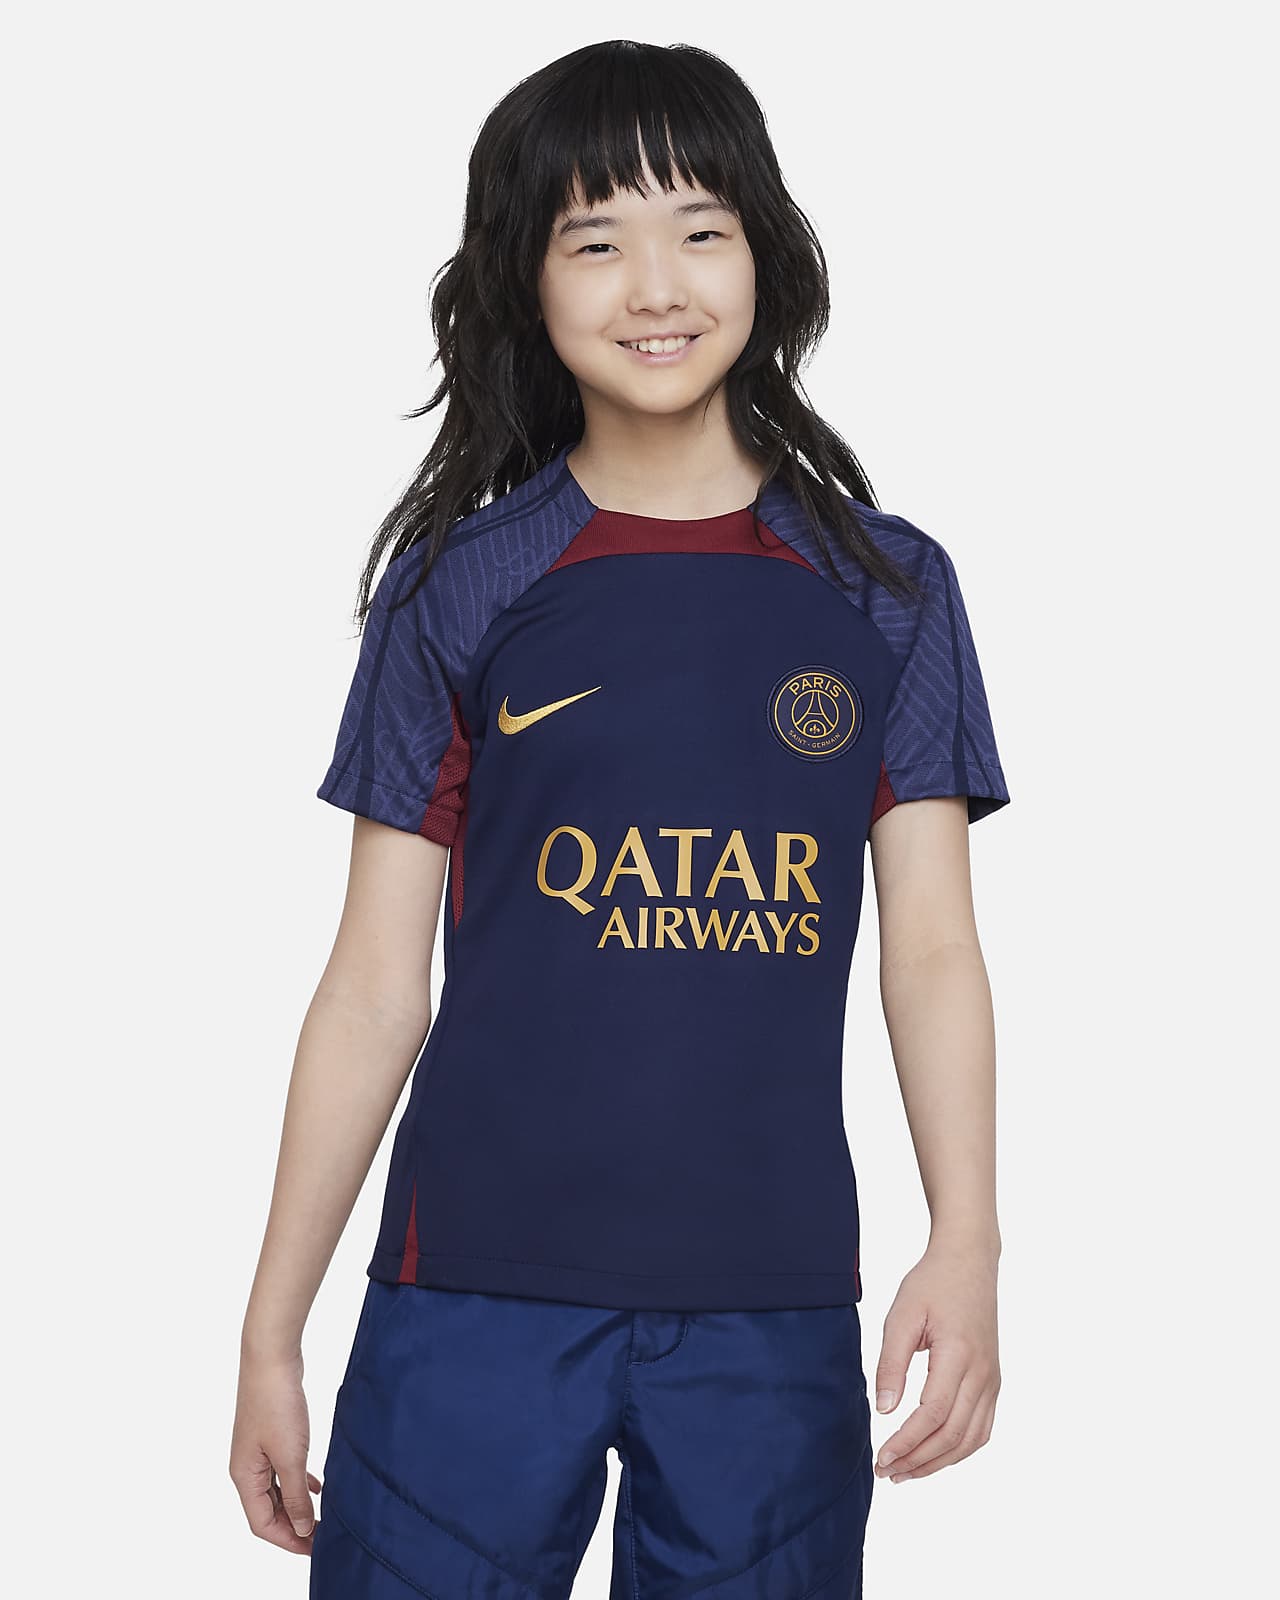 Πλεκτή ποδοσφαιρική μπλούζα Nike Dri-FIT Παρί Σεν Ζερμέν Strike για μεγάλα παιδιά